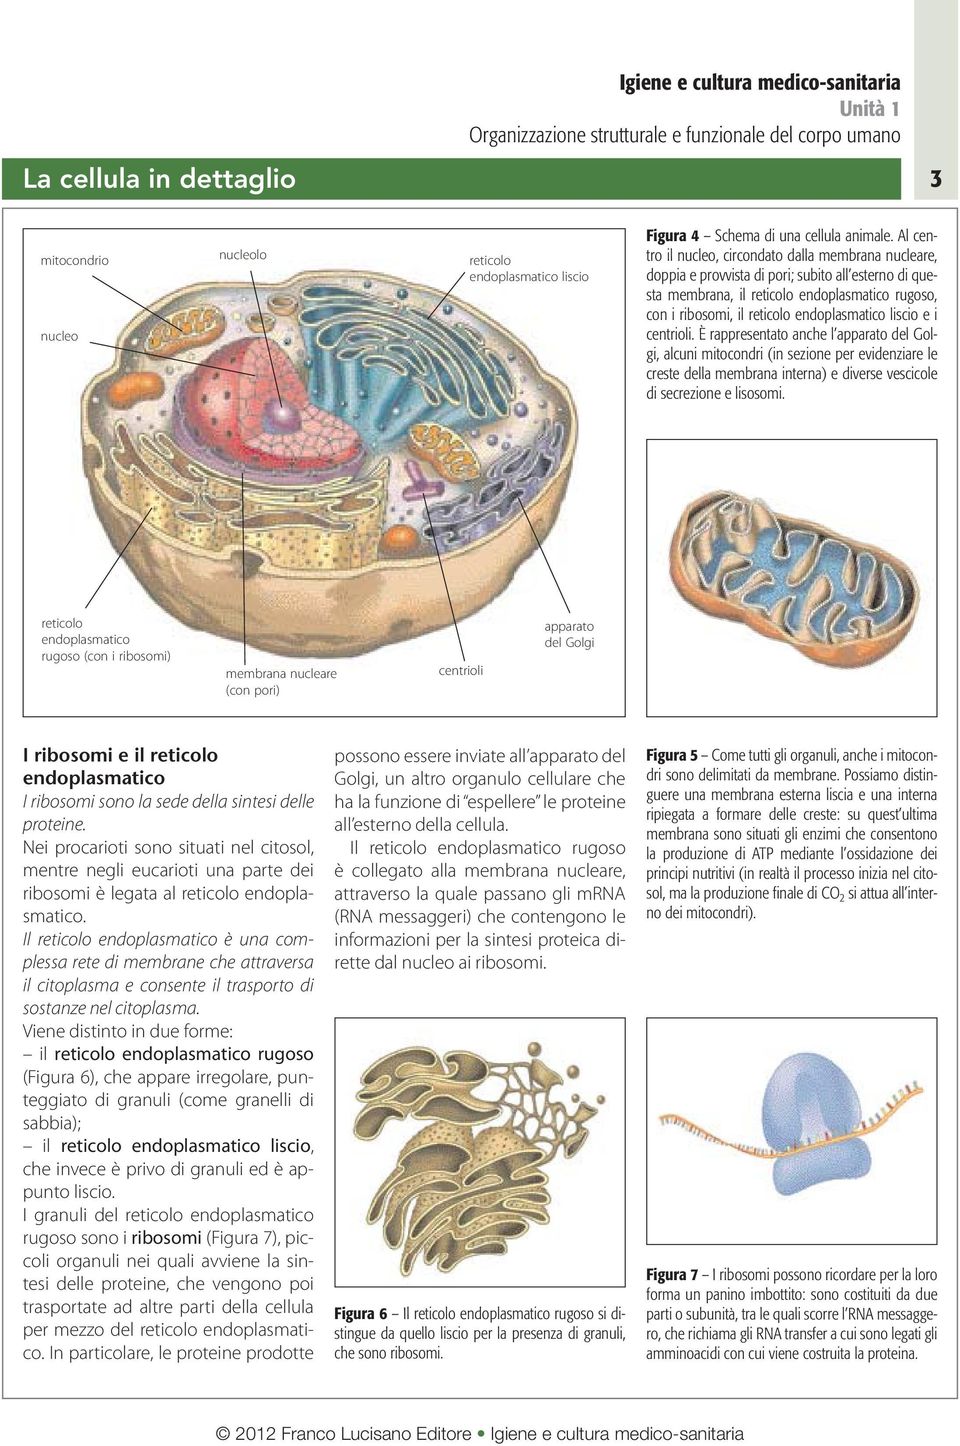 endoplasmatico liscio e i centrioli.